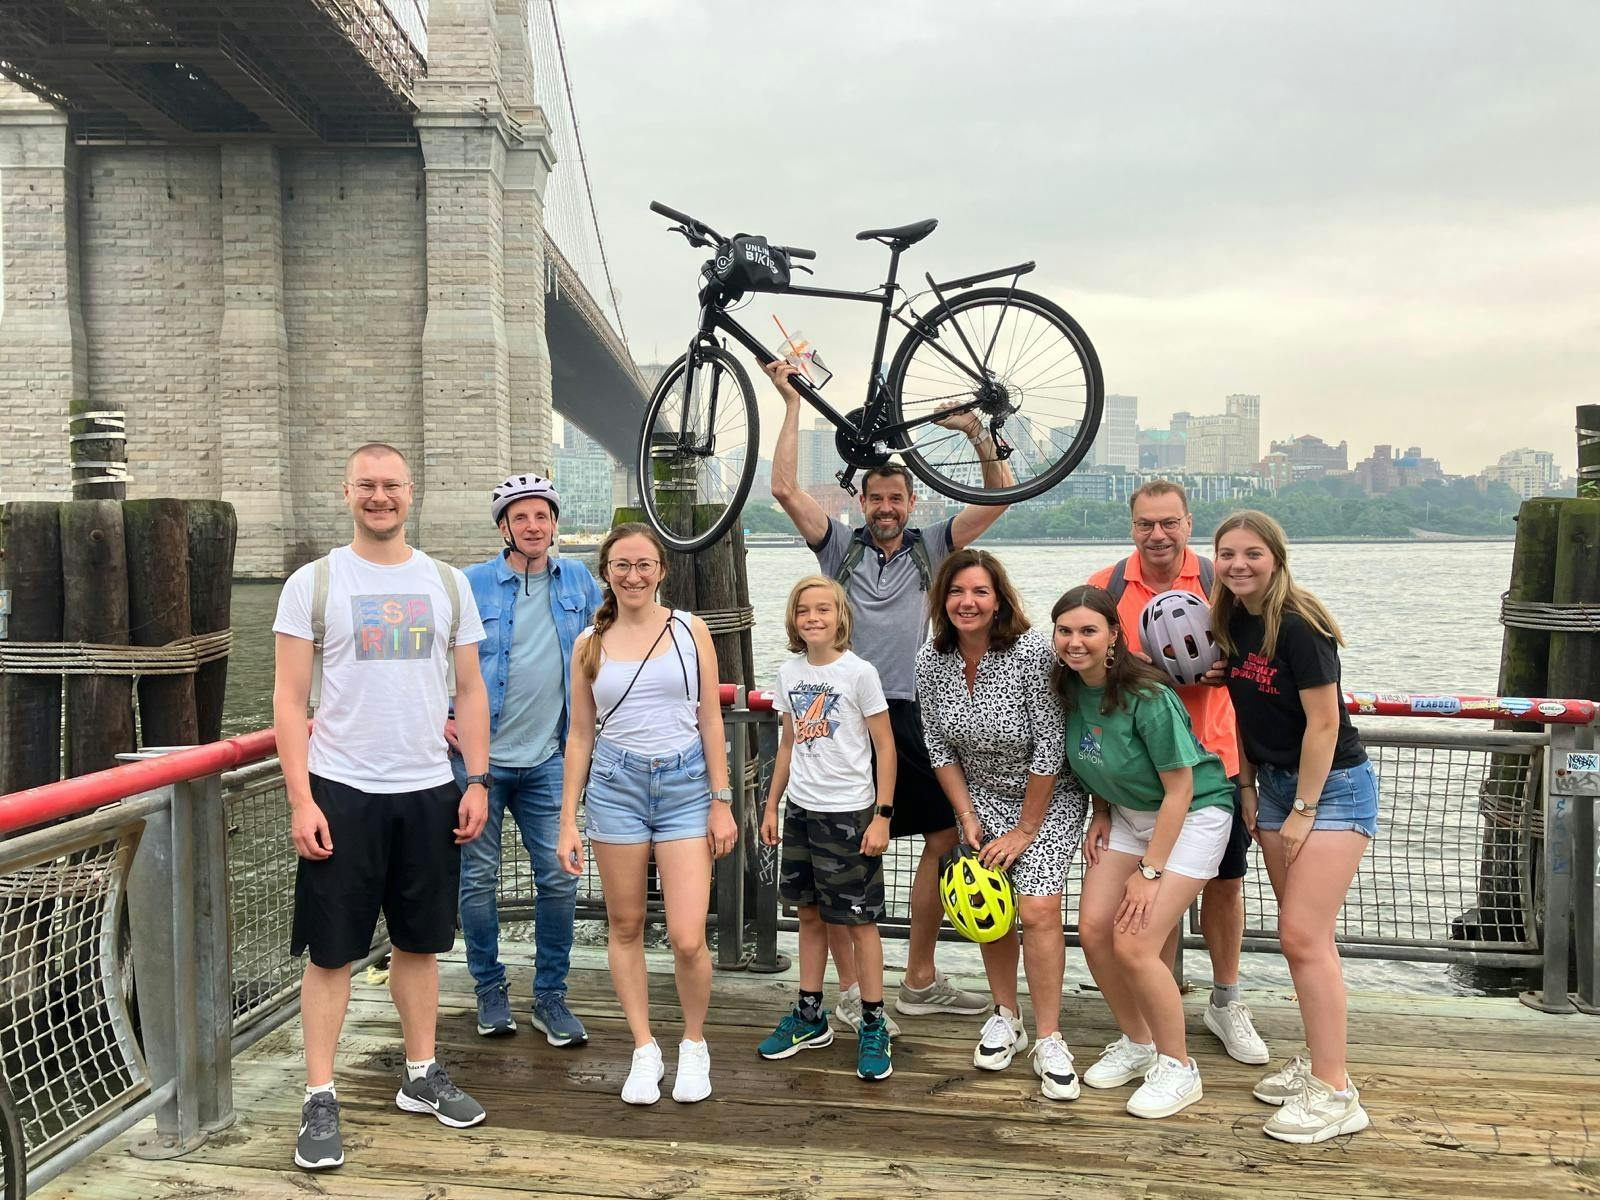 Tour privado guiado en bicicleta por el puente de Brooklyn